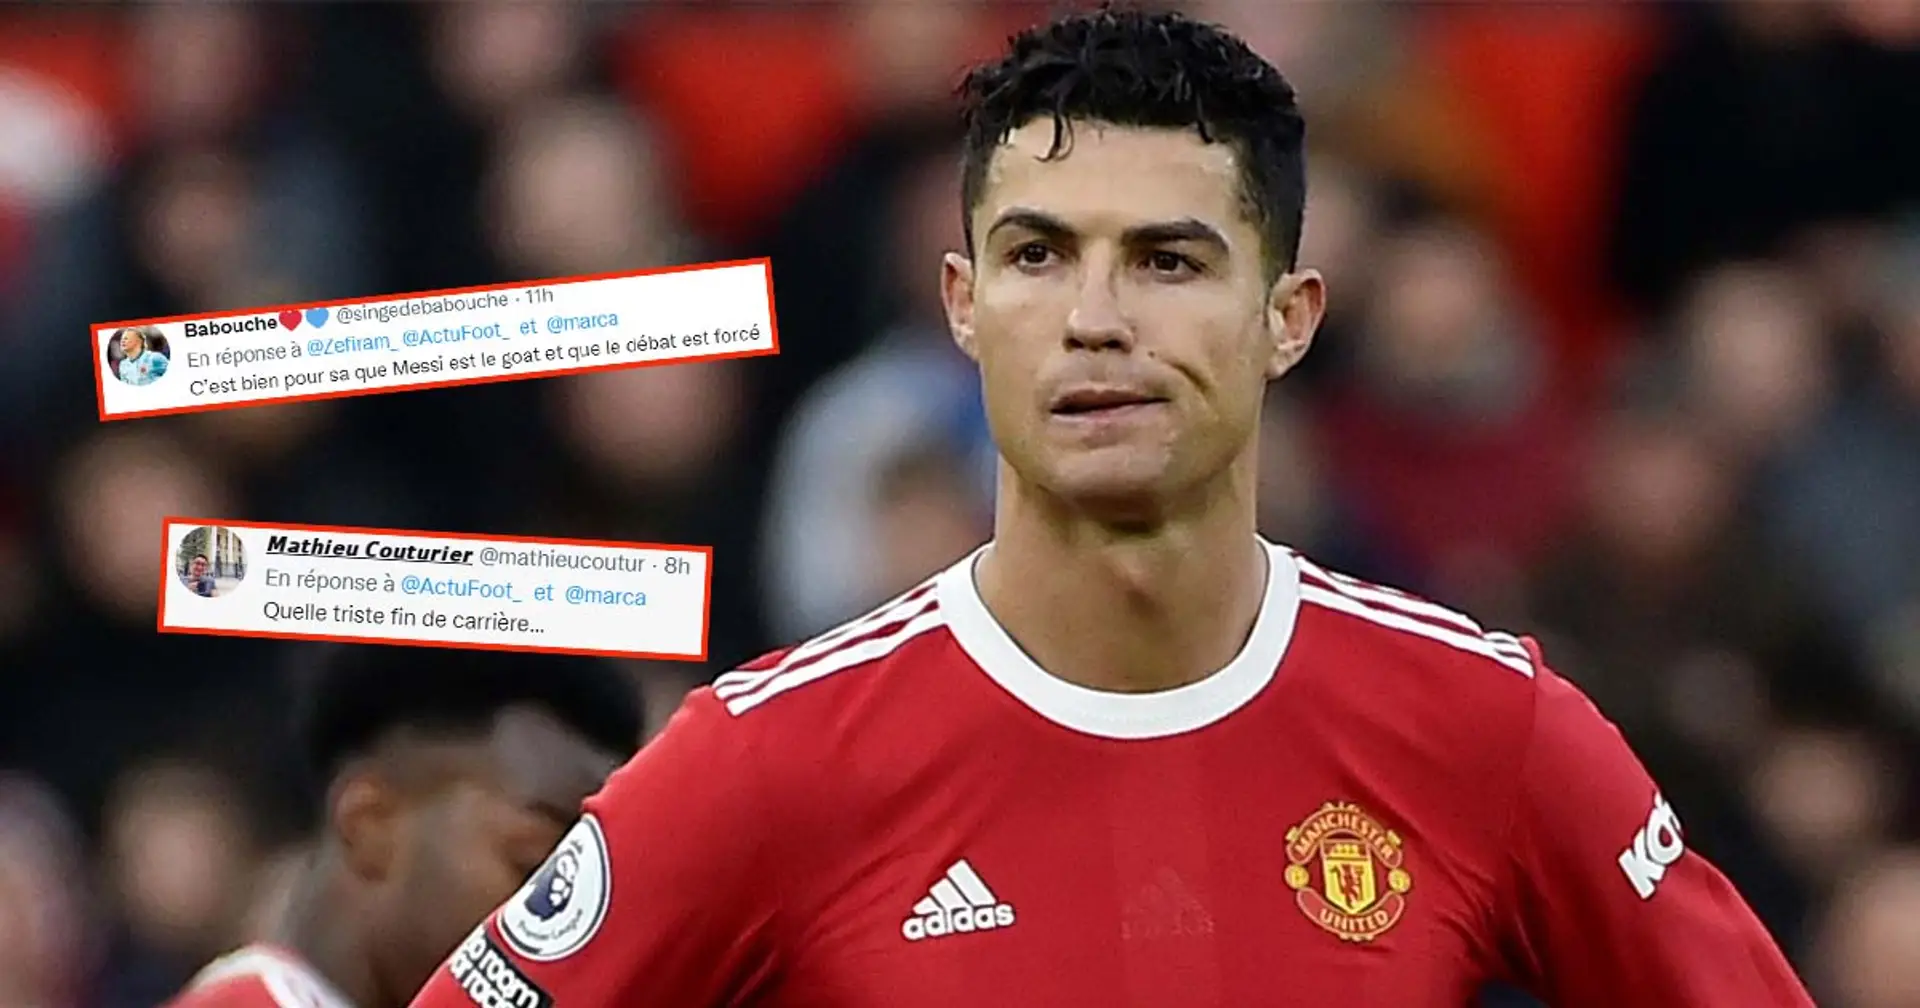 "Quelle triste fin de carrière", les fans réagissent aux dernières rumeurs mercato concernant Ronaldo et font référence à Messi